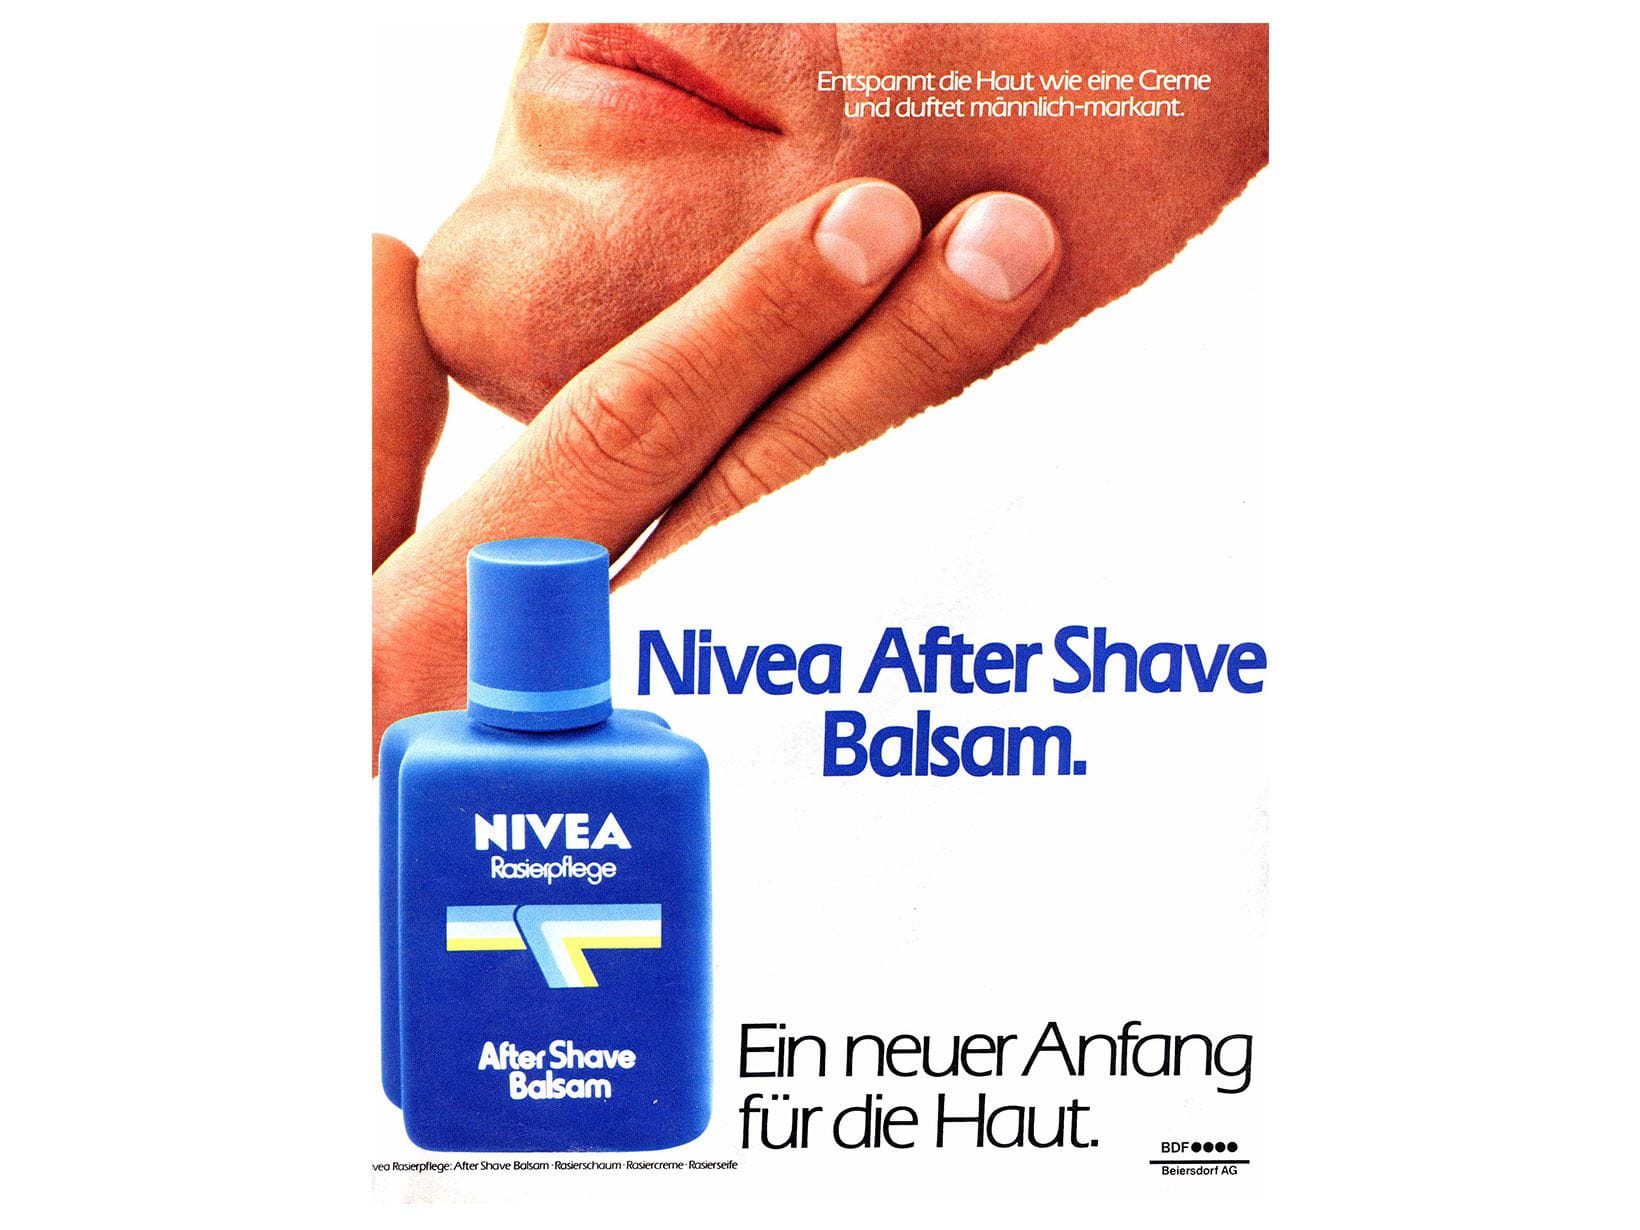 Реклама бальзама после бритья NIVEA, 1980 г.